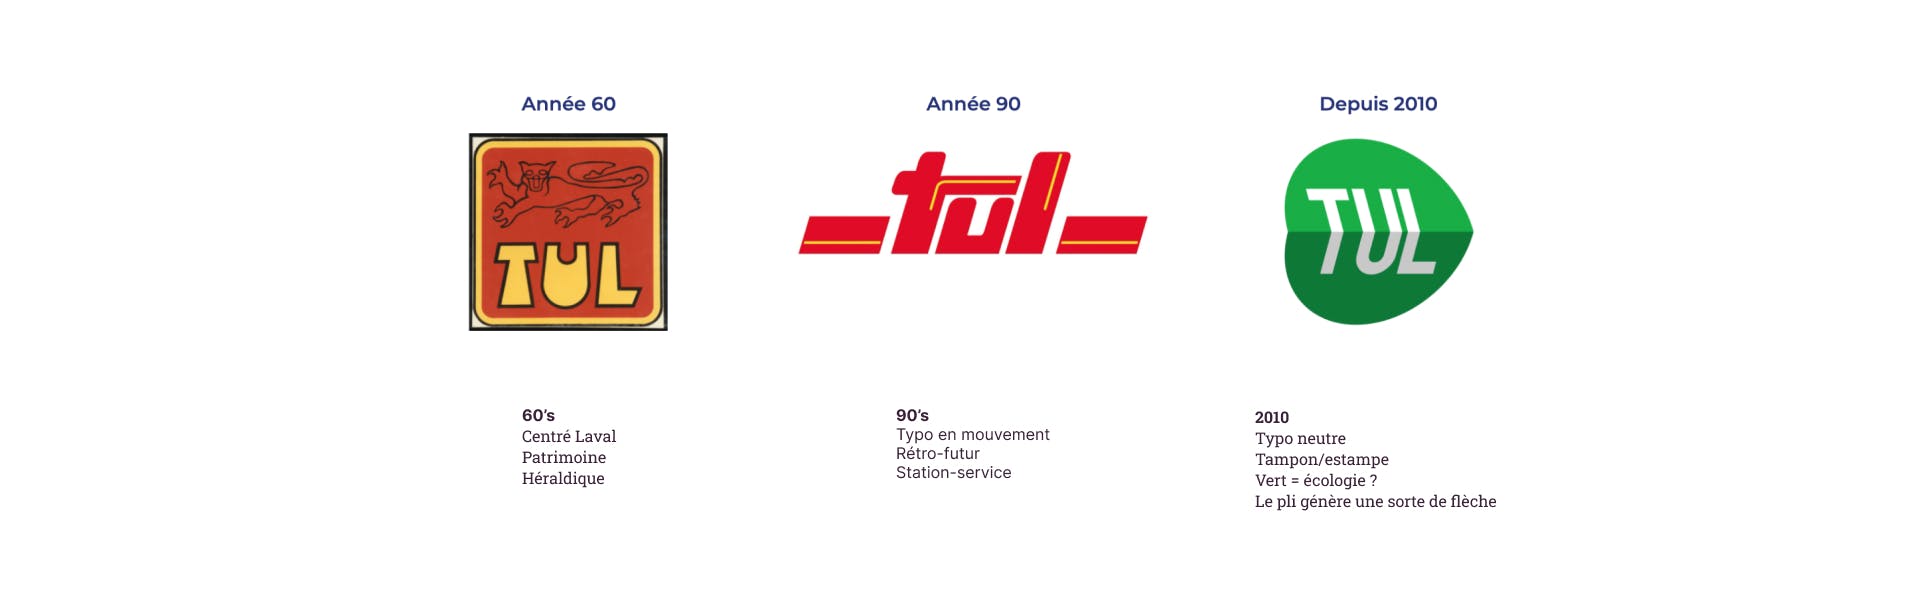 L'évolution des différents logos de la marque TUL à travers le temps.